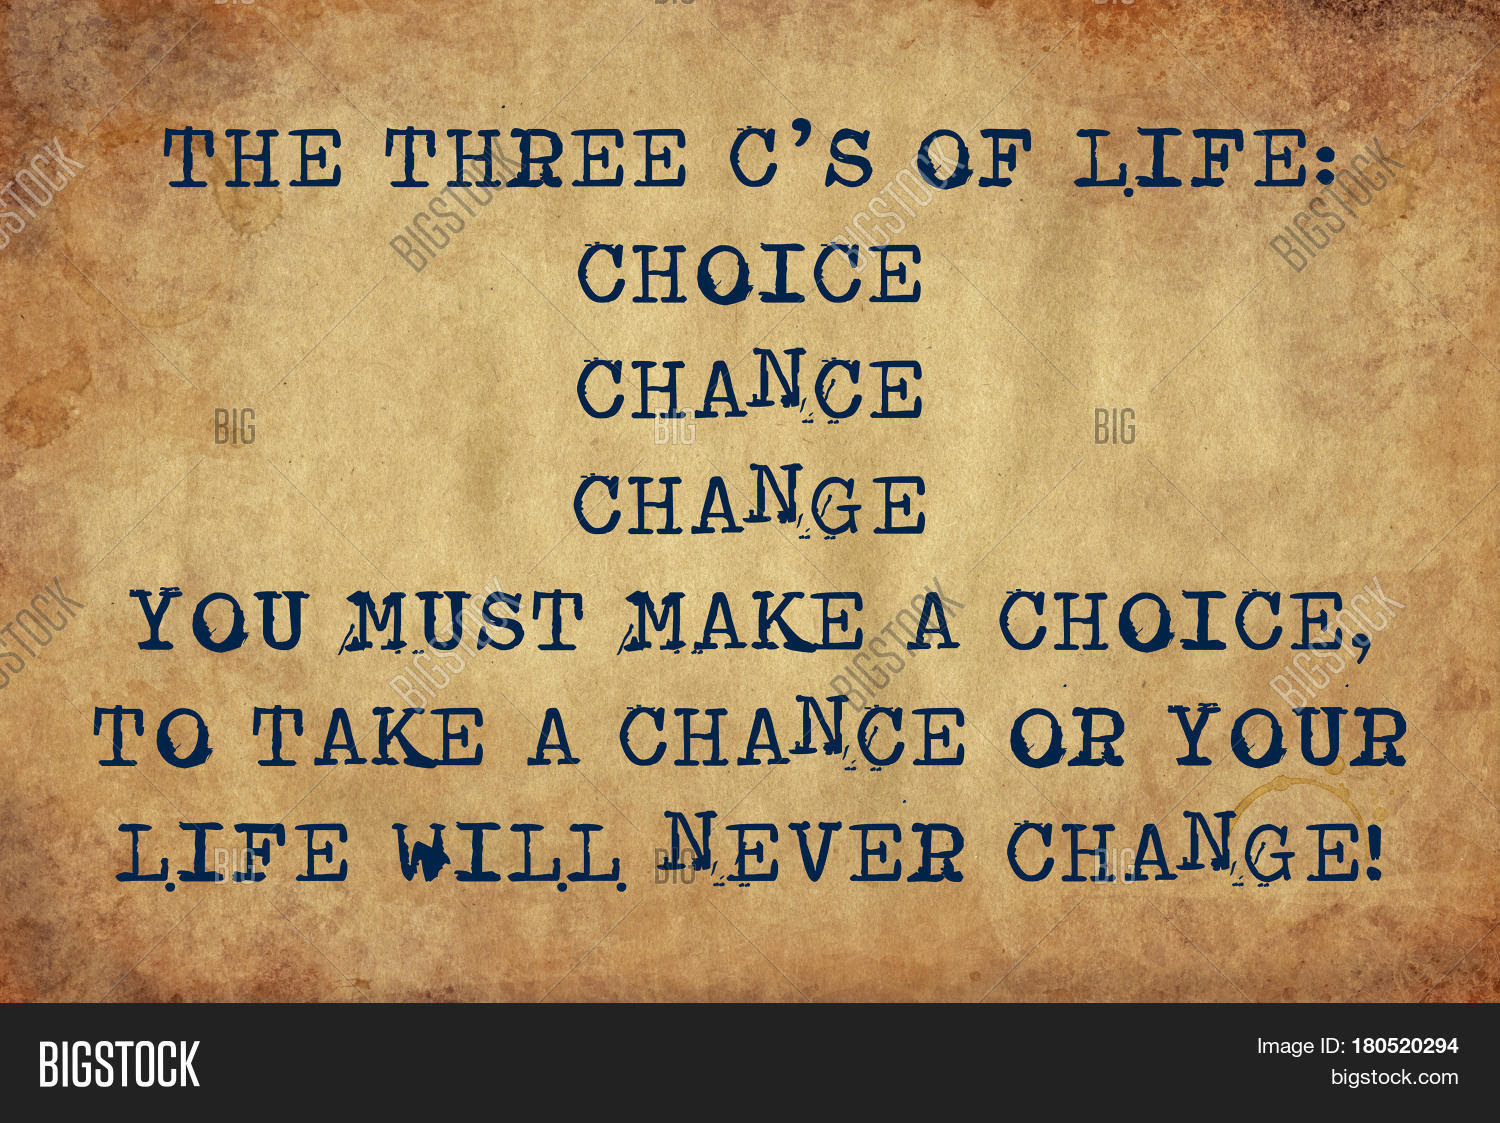 You made your choice. Make your choice make your Life. The choice of Life Вики. Make a choice. Take a choice.